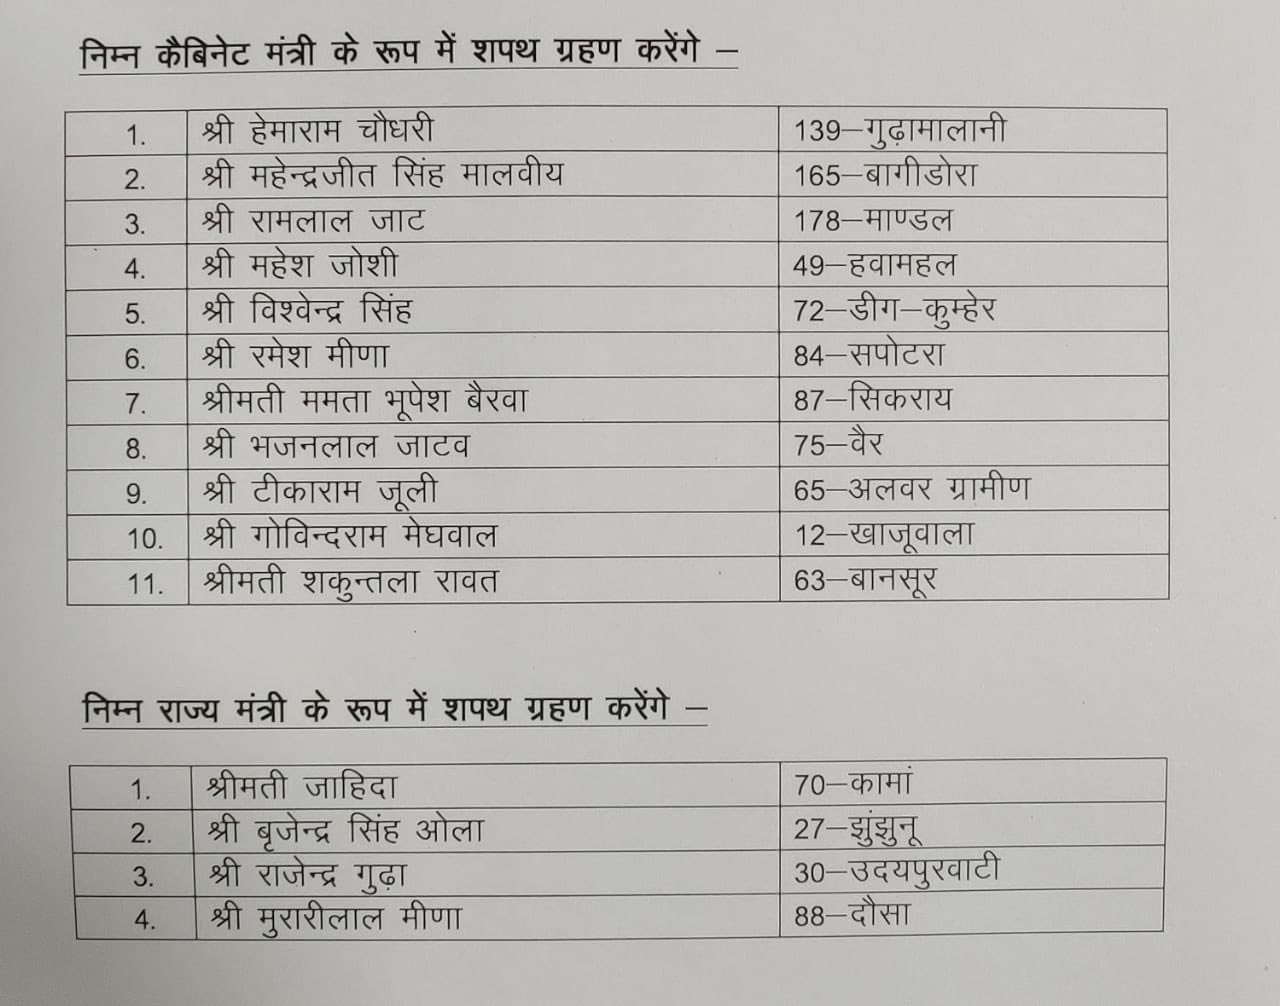 Rajasthan New Ministers List 2021 PDF